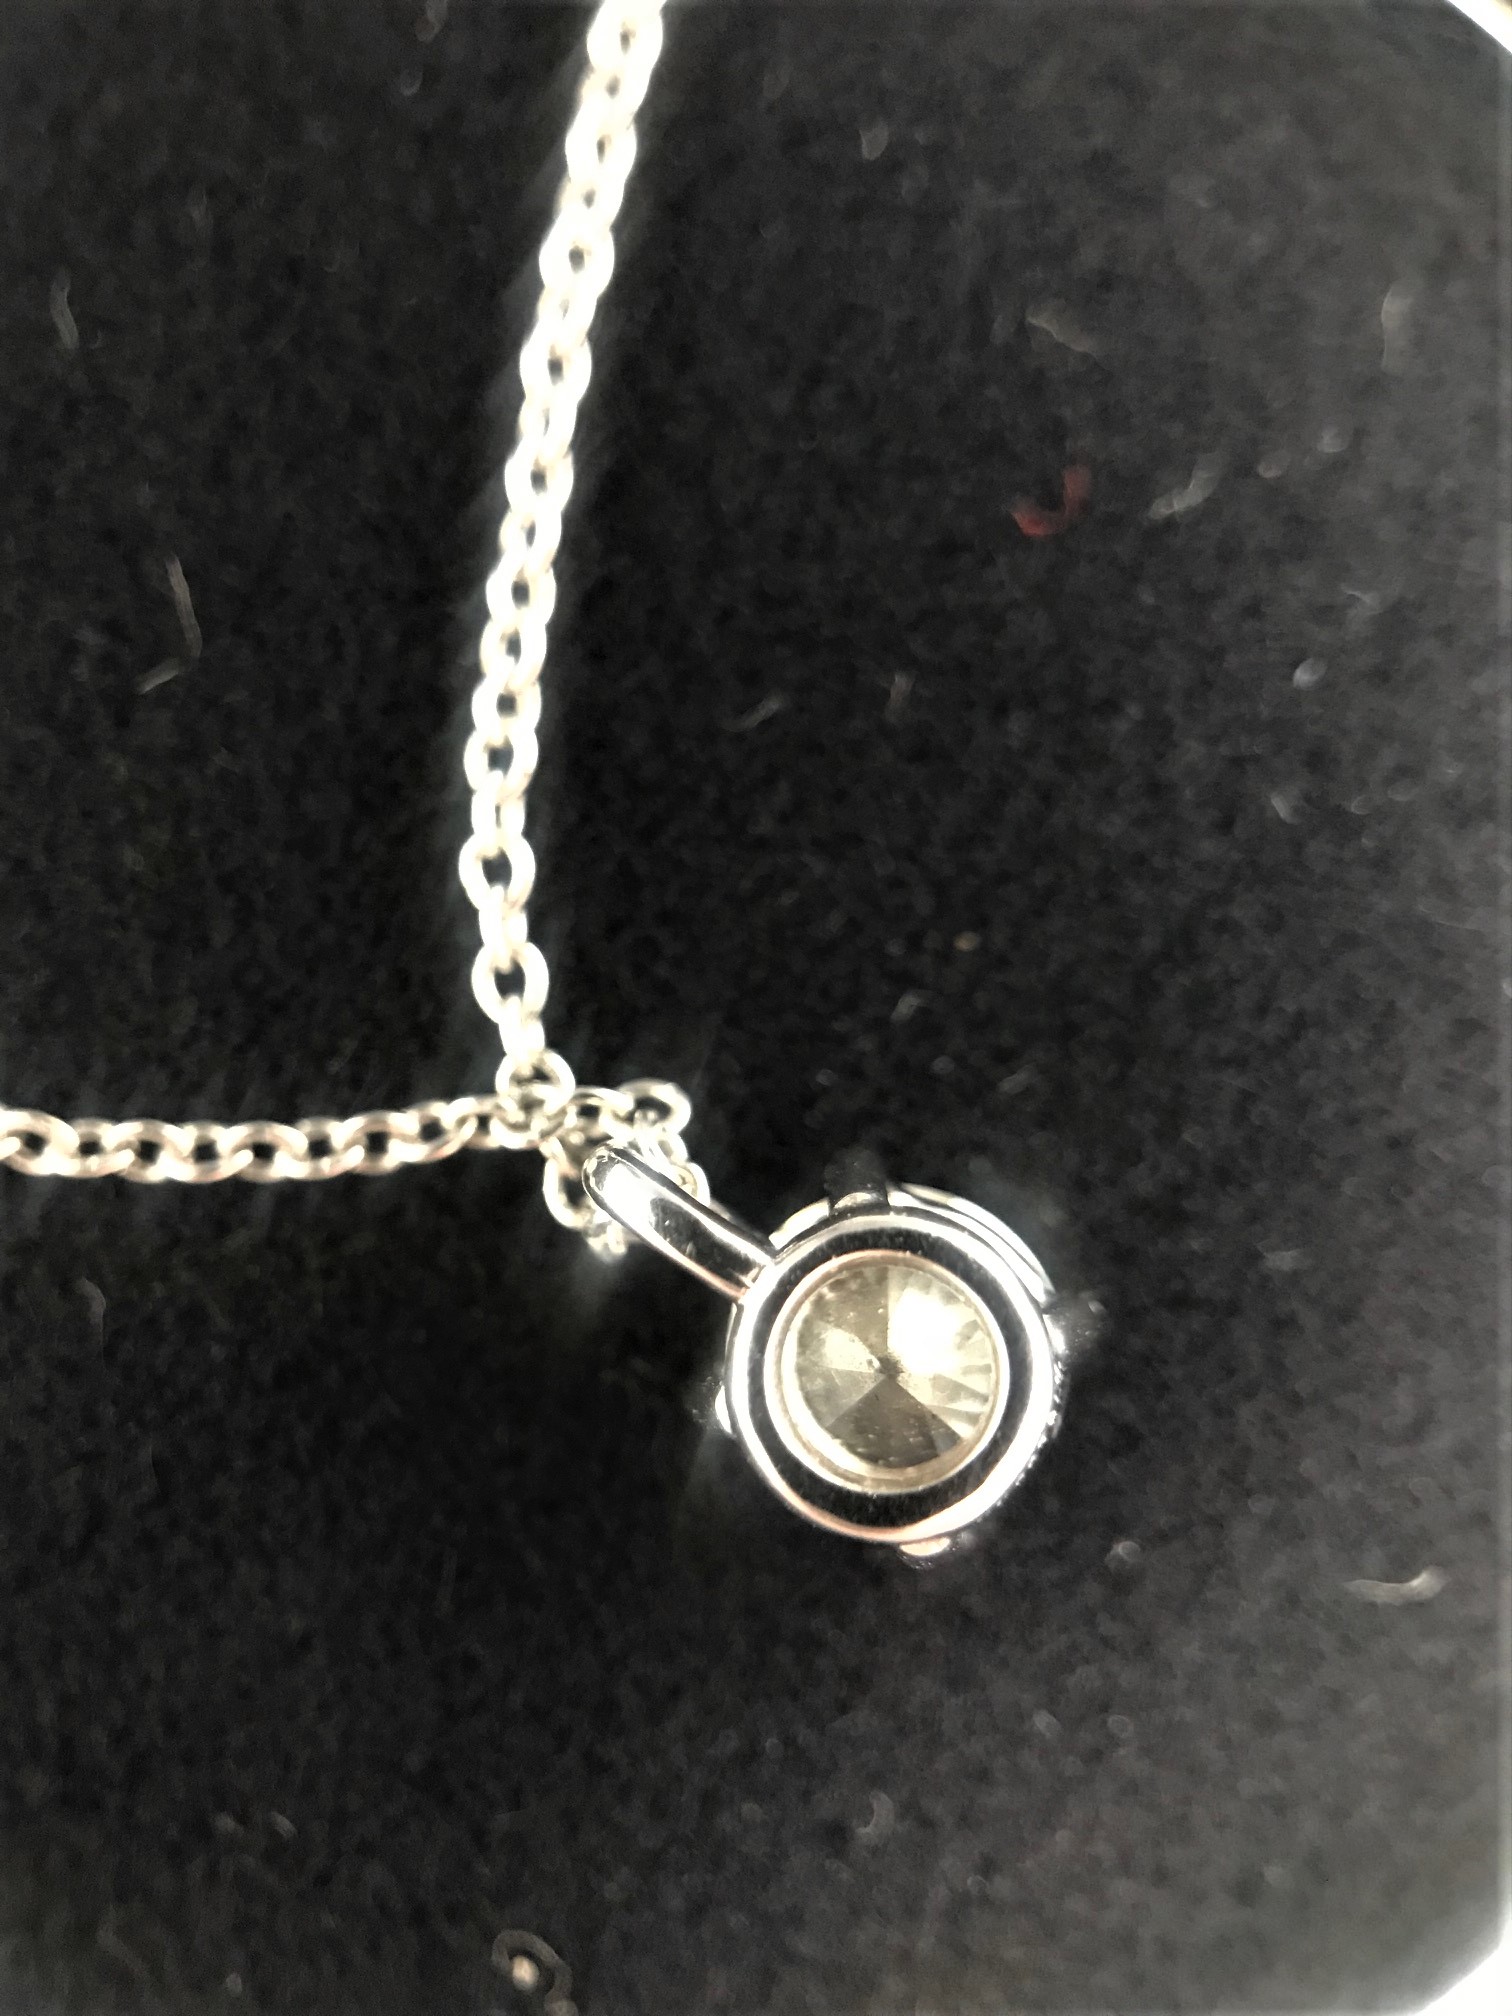 Tiffany solitaire 0.31Ct platinum pendant - Image 2 of 2